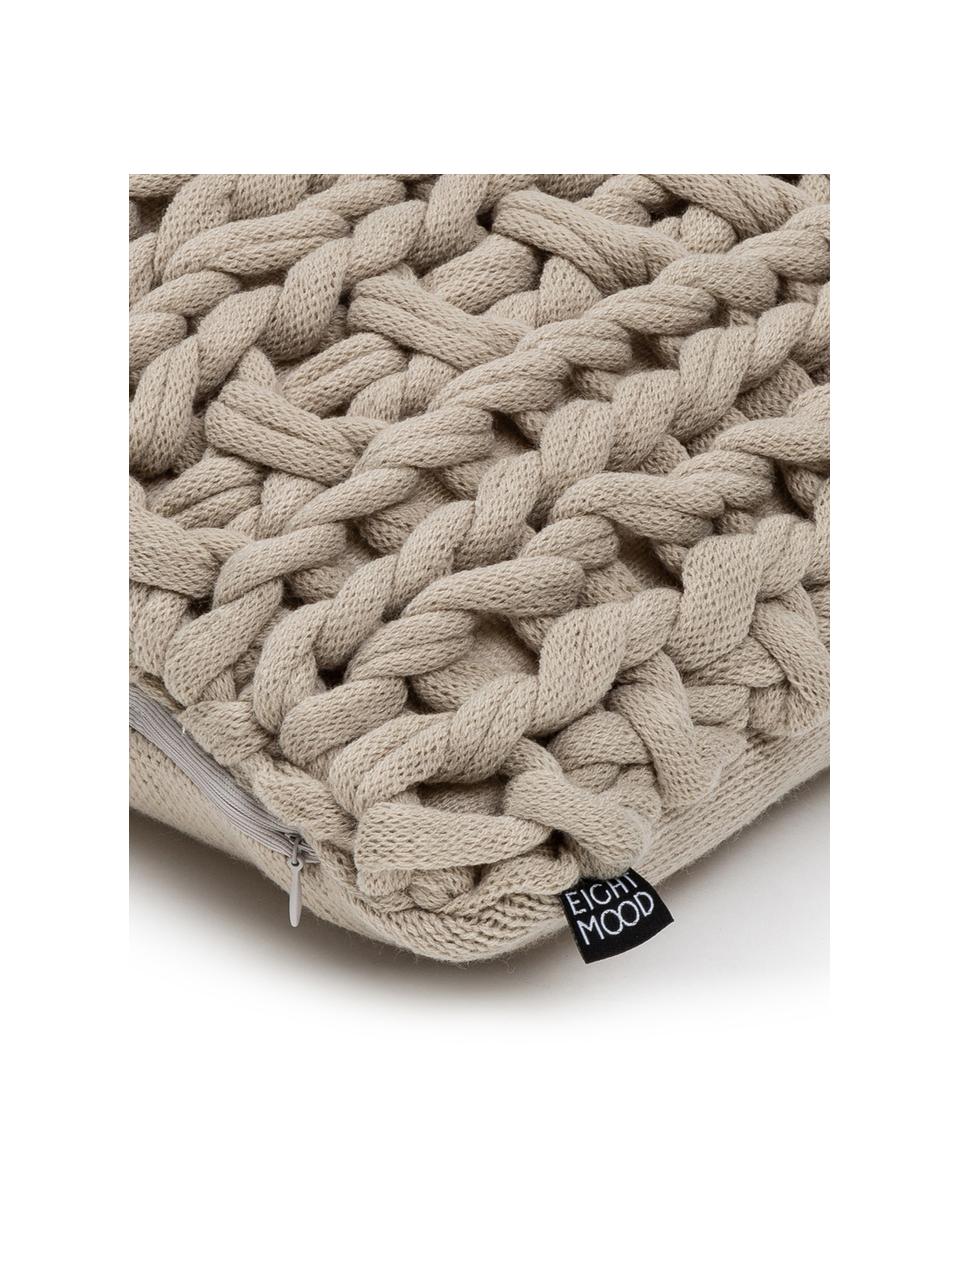 Cuscino fatto a maglia con imbottitura Chunky, Beige, Larg. 40 x Lung. 60 cm